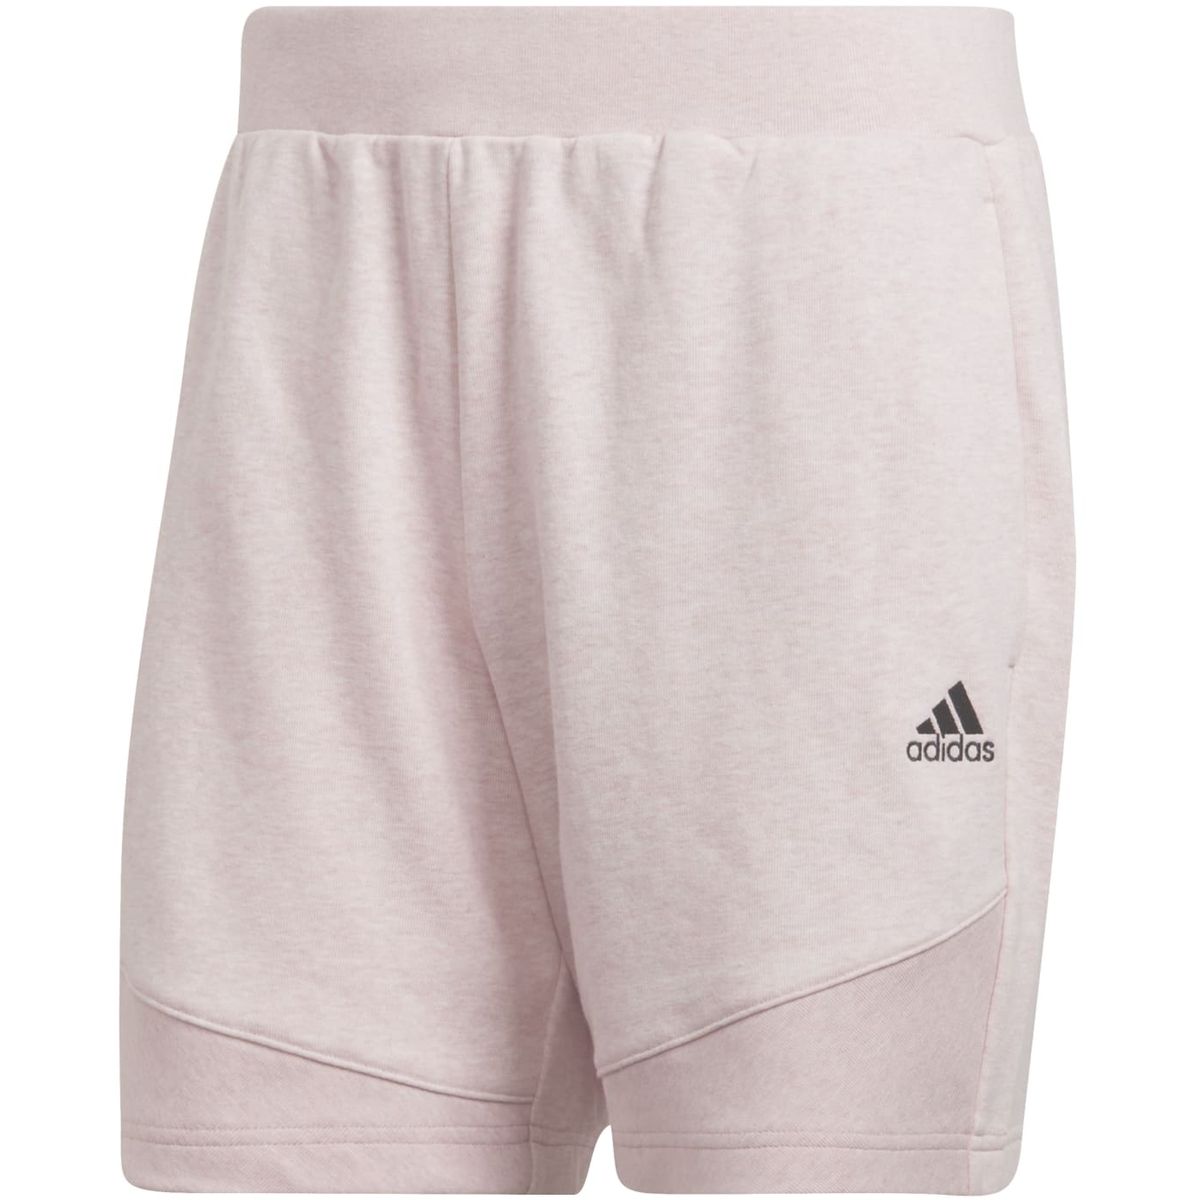 Adidas Botanically Dyed Shorts – Genderneutral Unisex